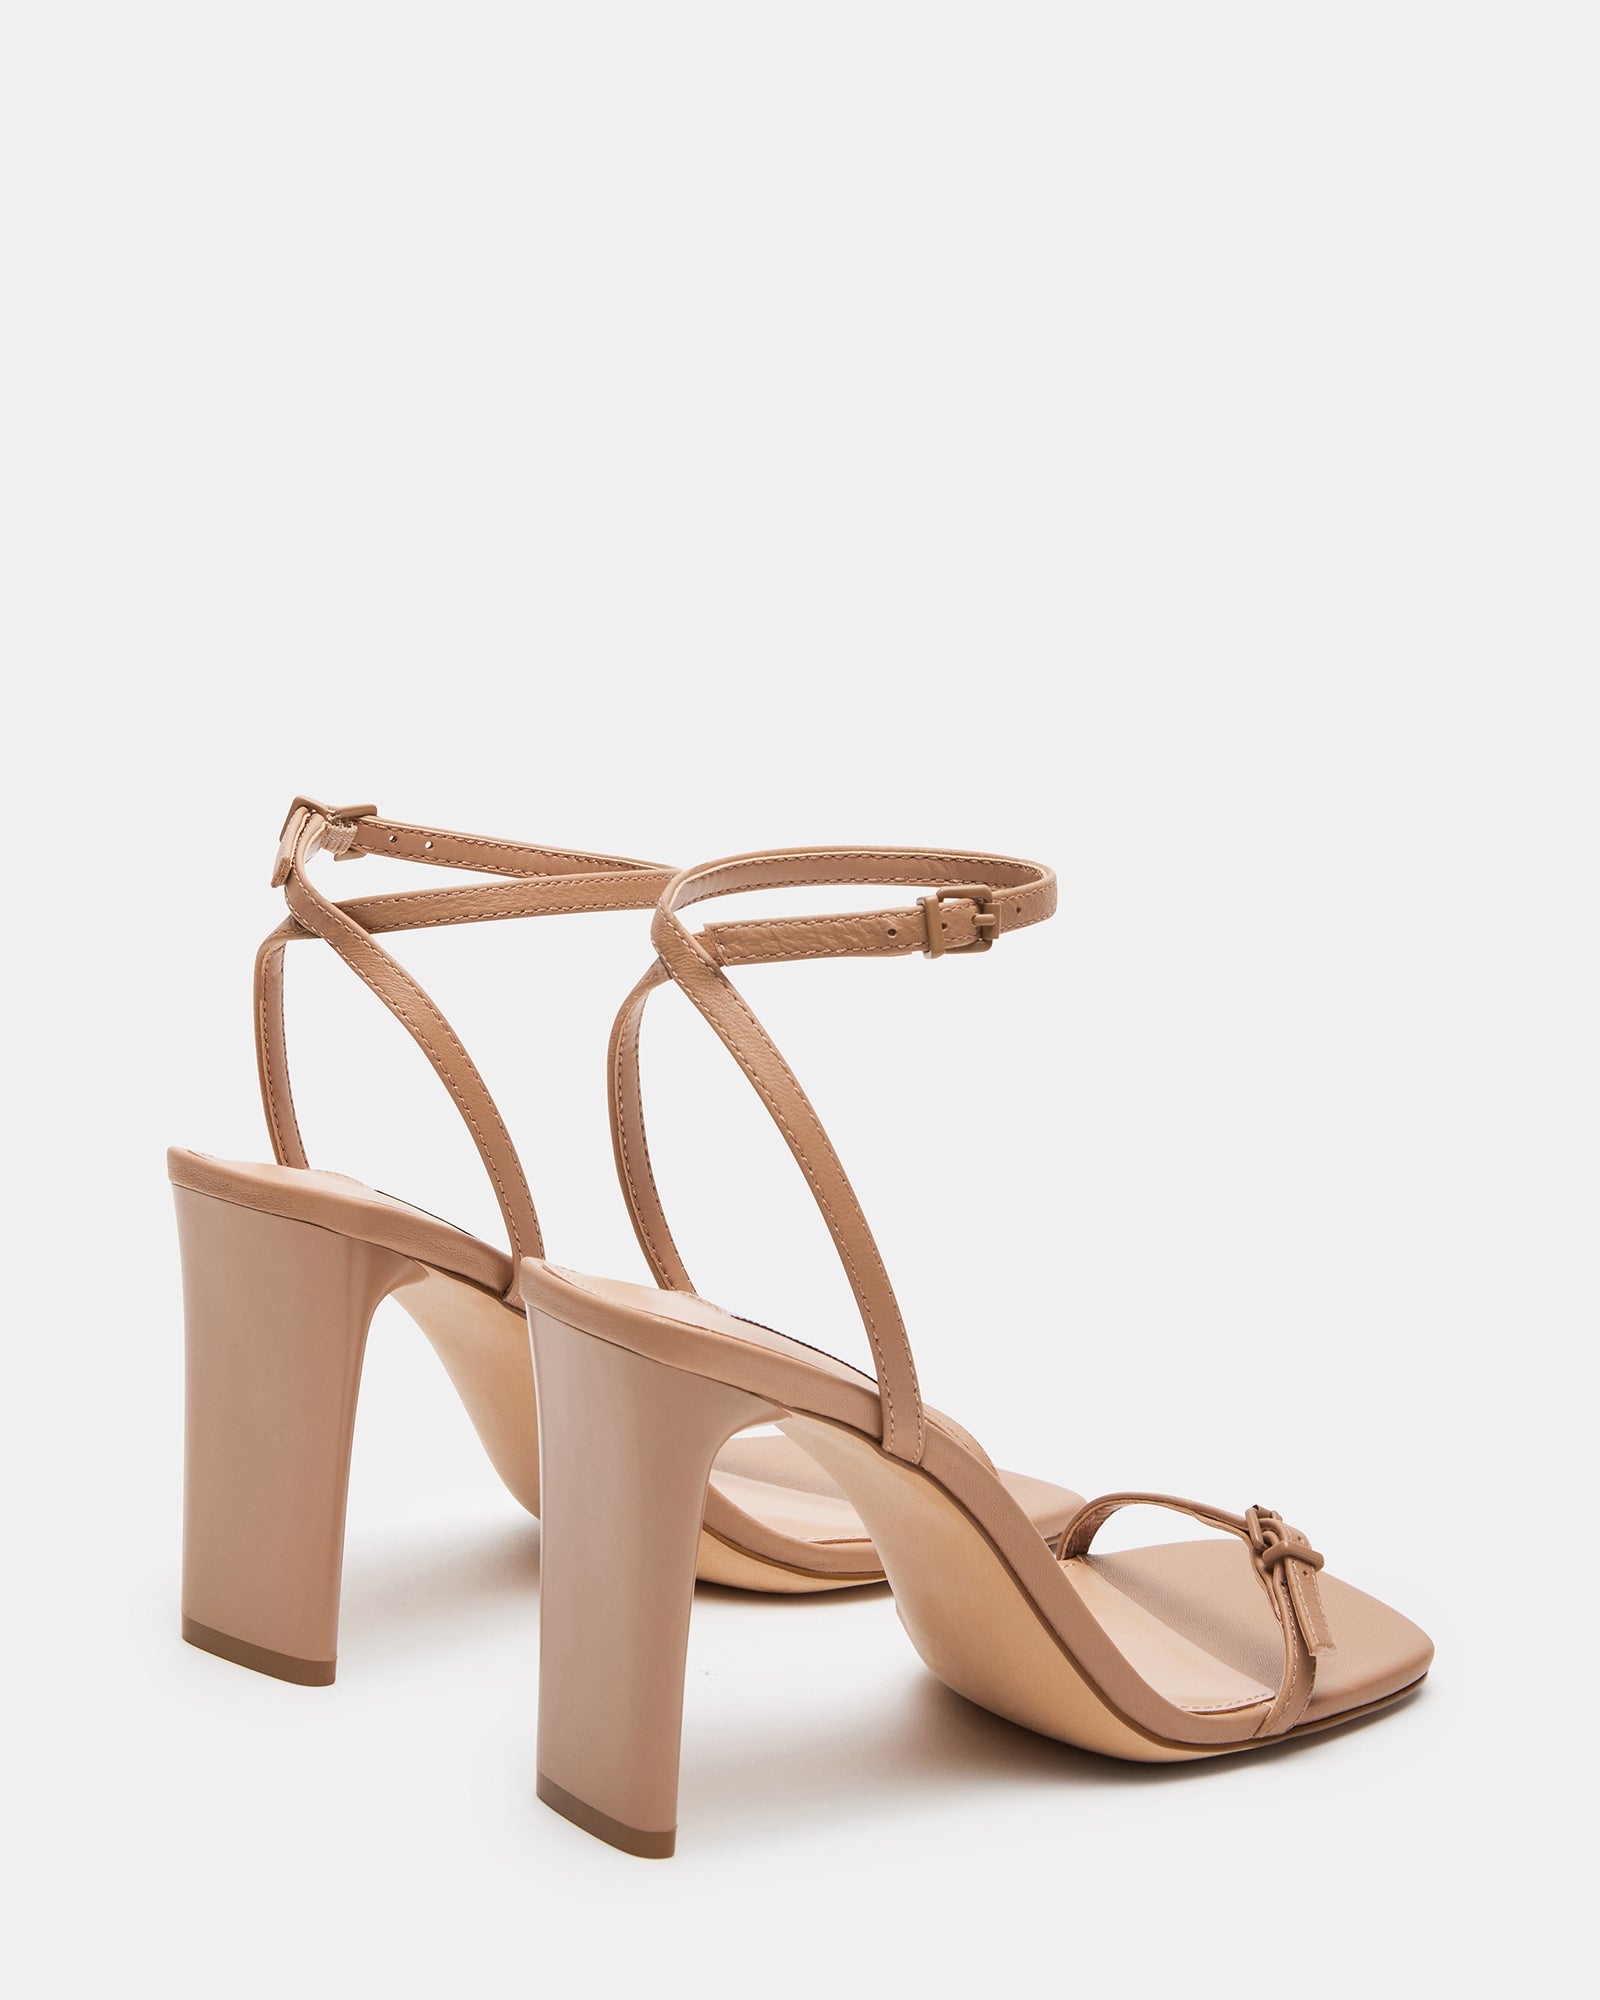 AILENE Tan Leather Square Toe Dress Sandal | Women's Heels – Steve Madden